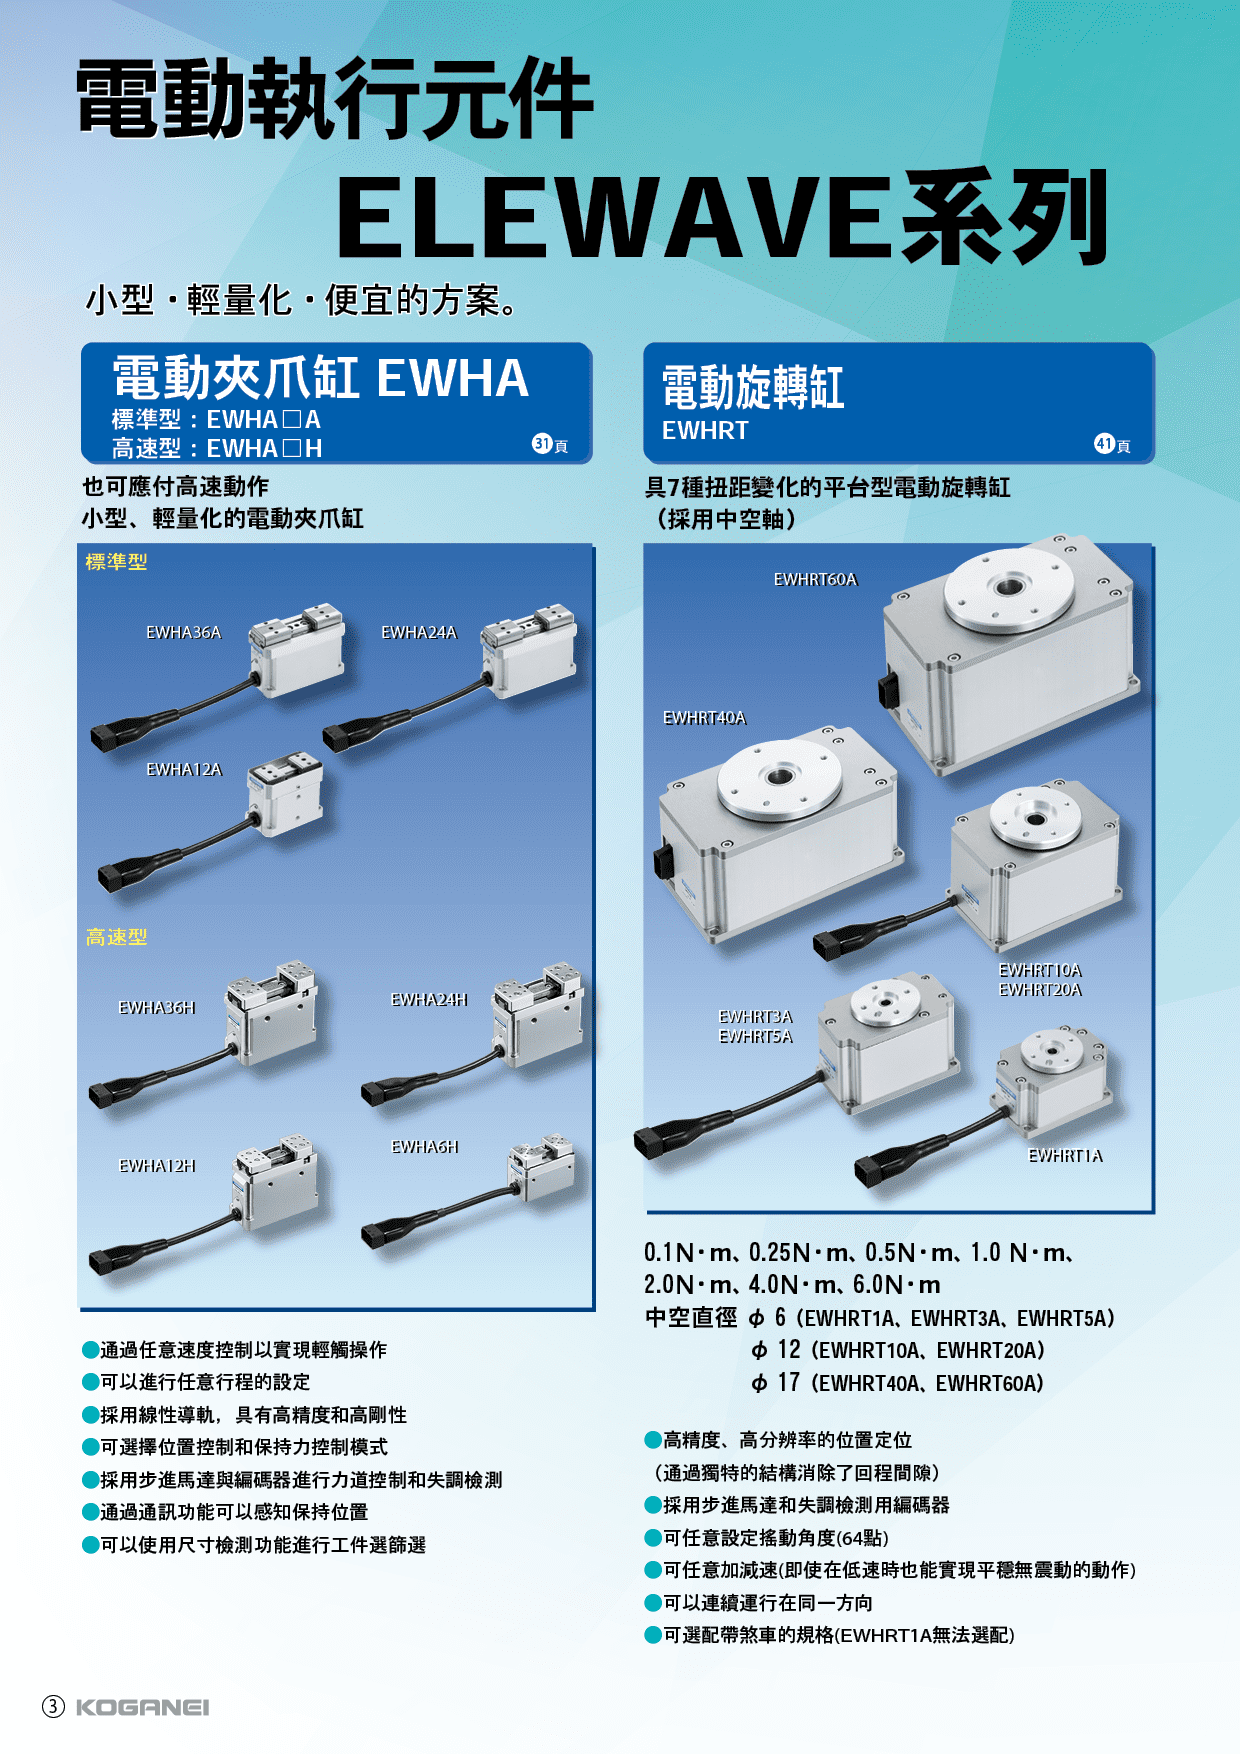 電動執行元件ELEWAVE系列-產品特色4(EWHA)